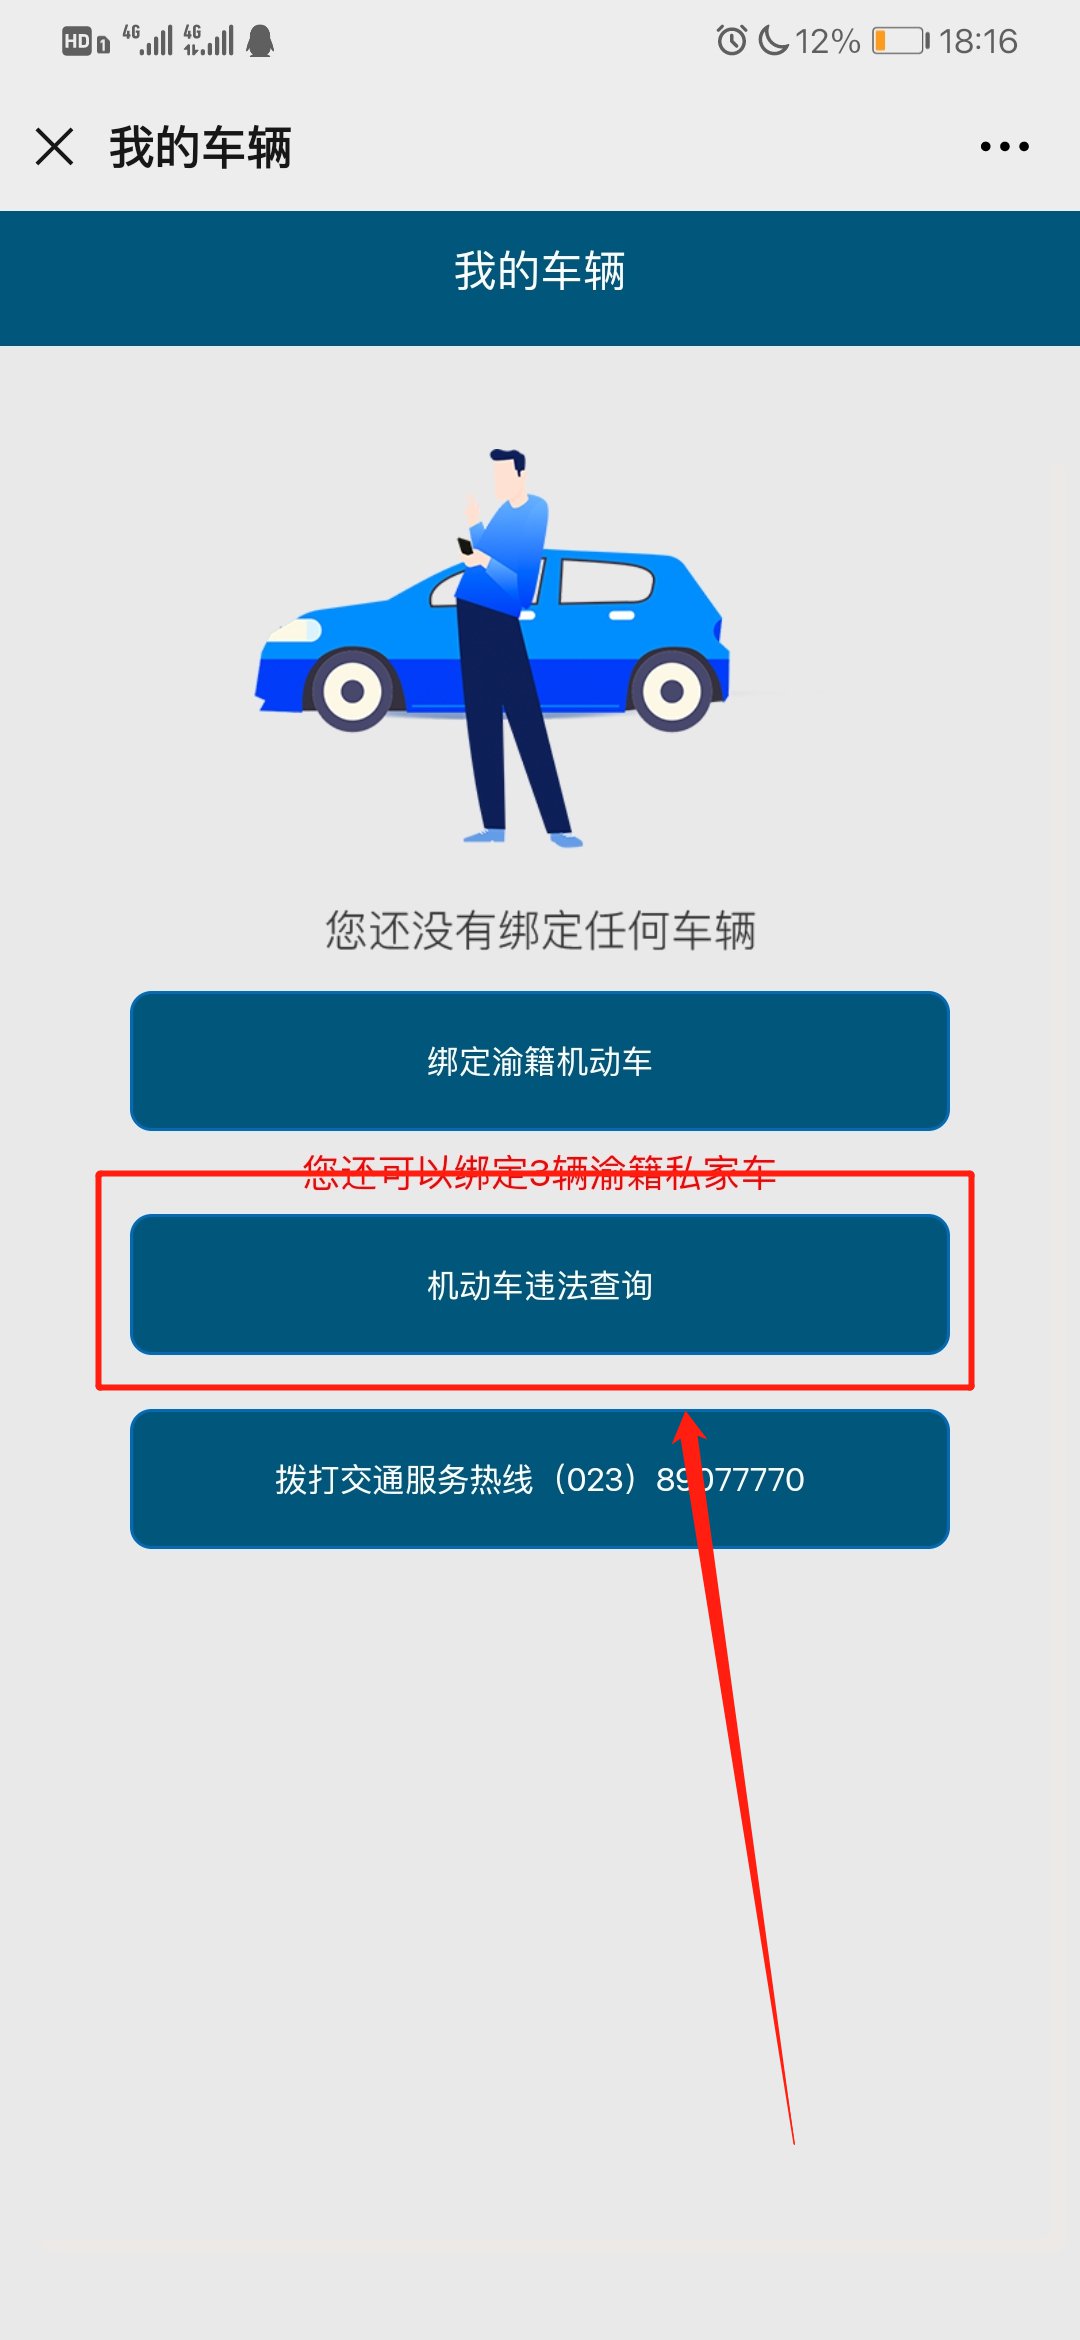 重庆交通执法总队违章查询流程